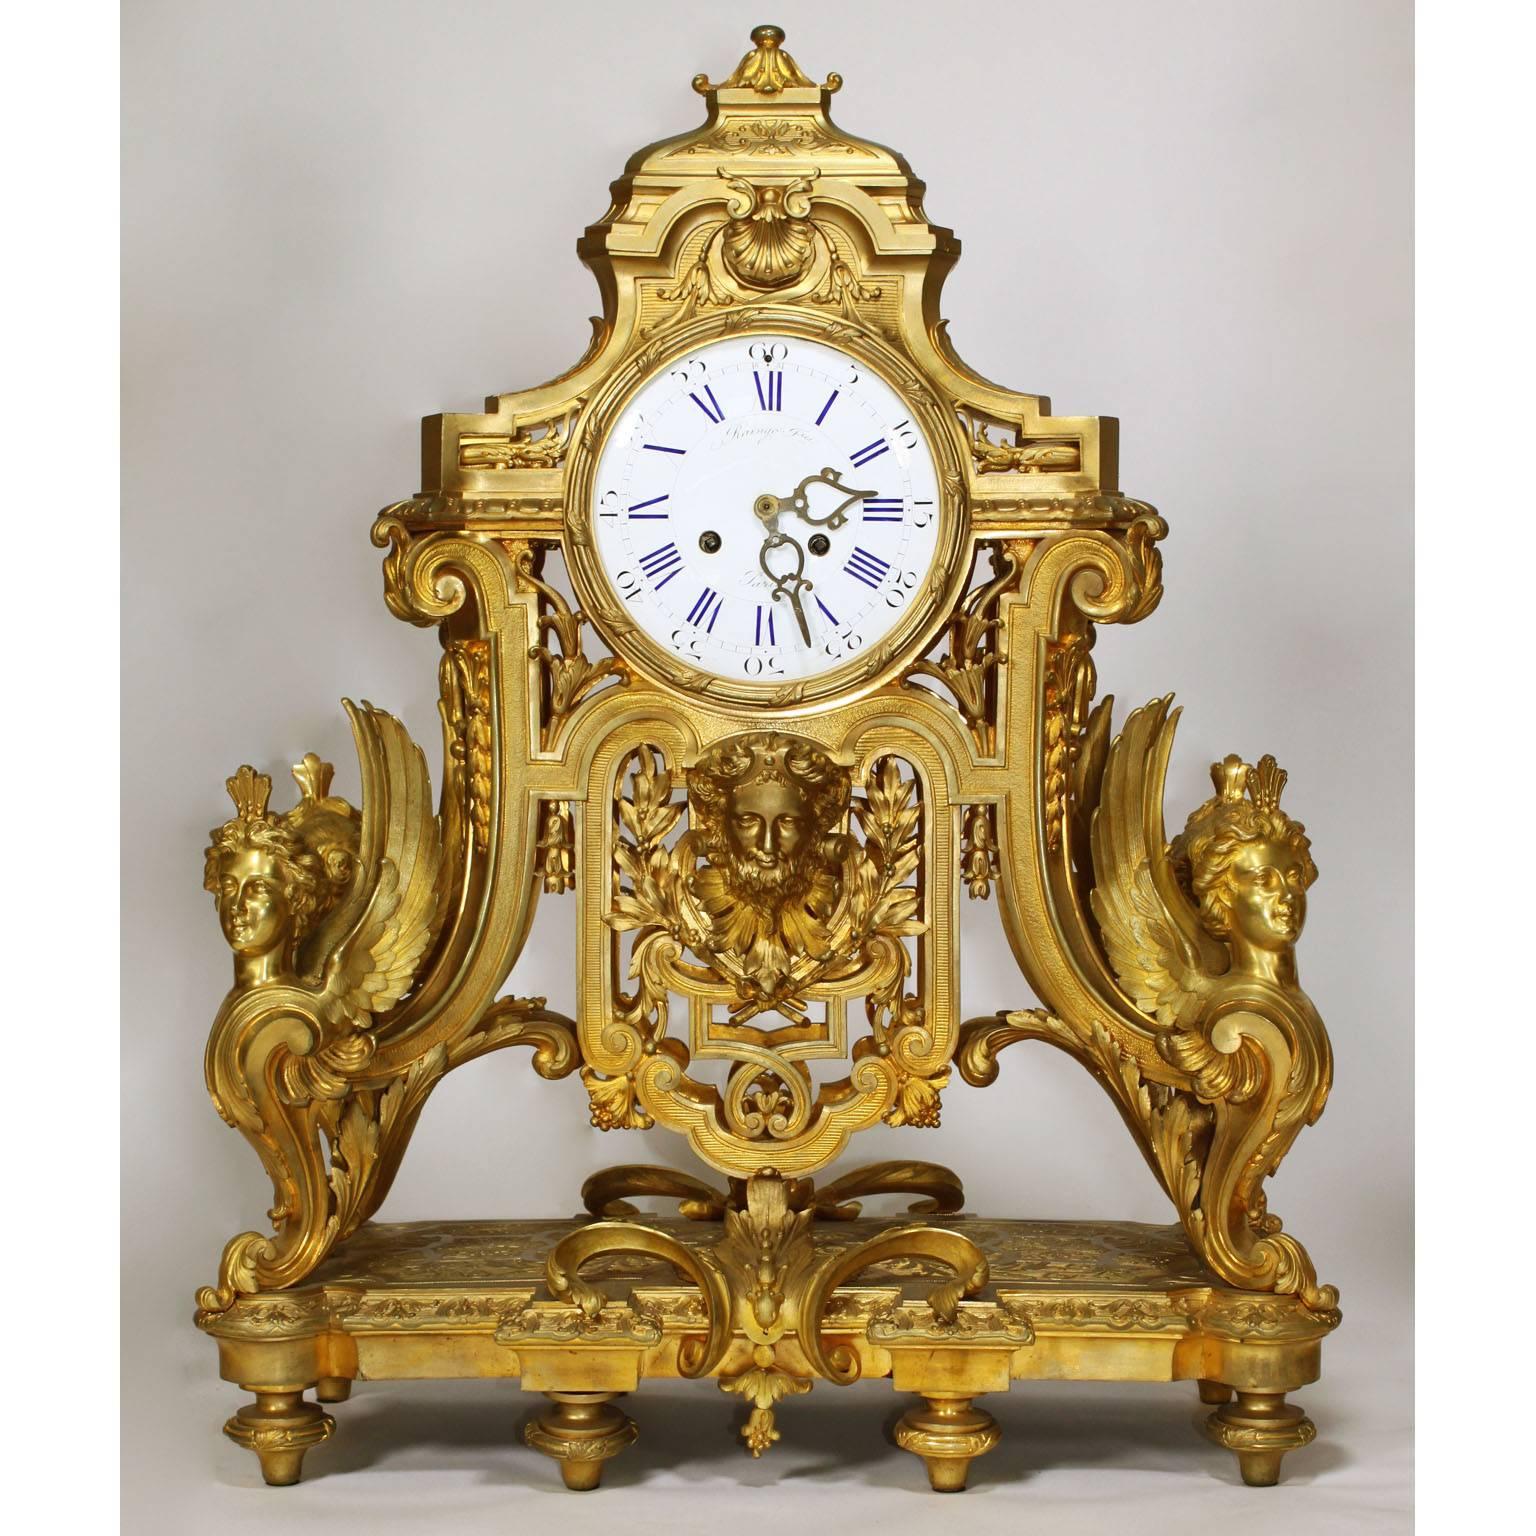 Très bel ensemble palatial français du XIXe siècle de style Louis XIV, composé d'une pendule en bronze doré et d'une paire de candélabres à dix lumières. La pendule en bronze doré finement ciselé avec un sommet bombé, le cadran en émail signé Raingo